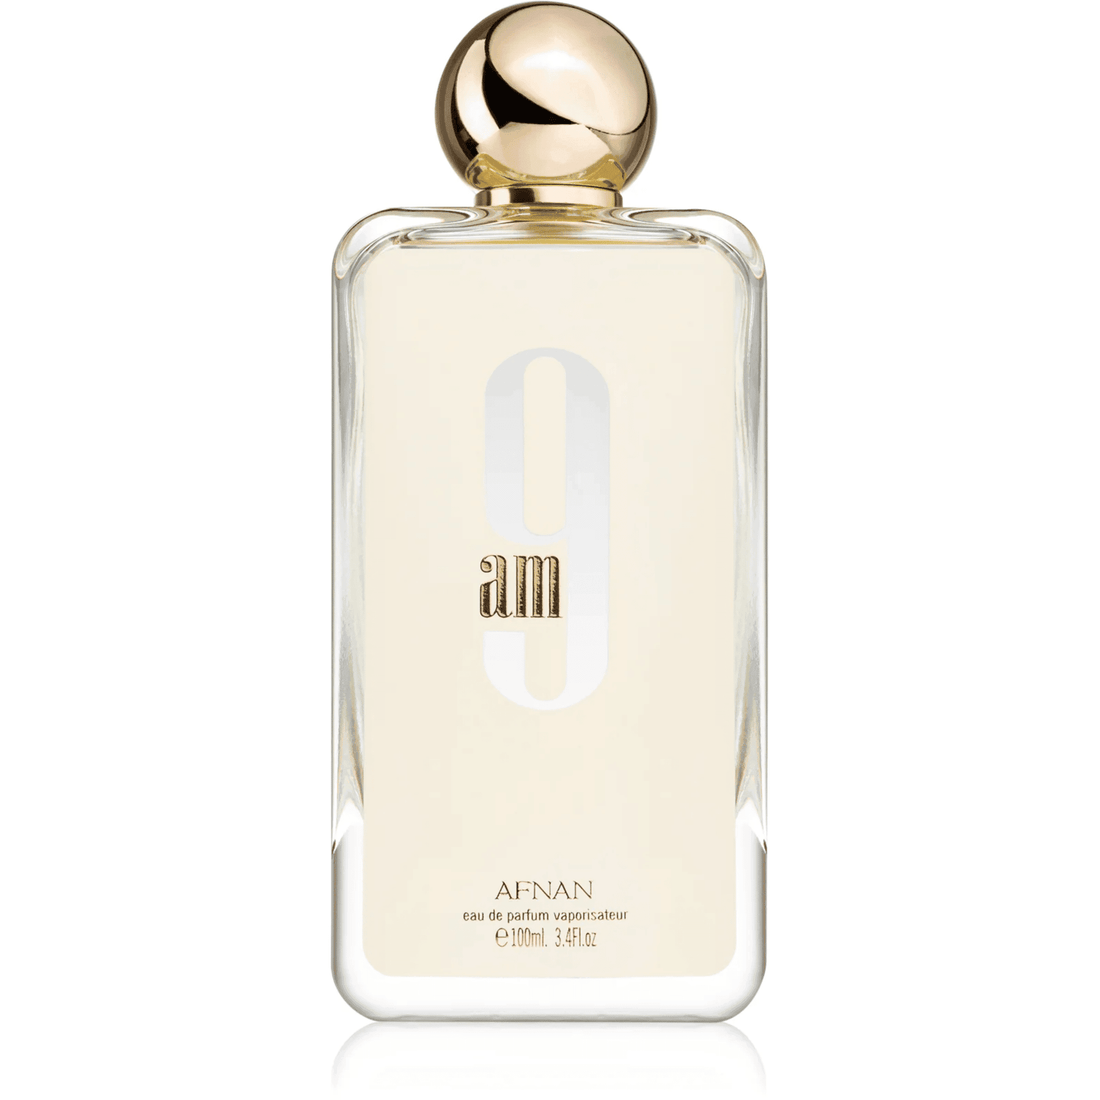 Afnan 9 AM Eau De Parfum - Unisex Perfume & Perfect Gift Online